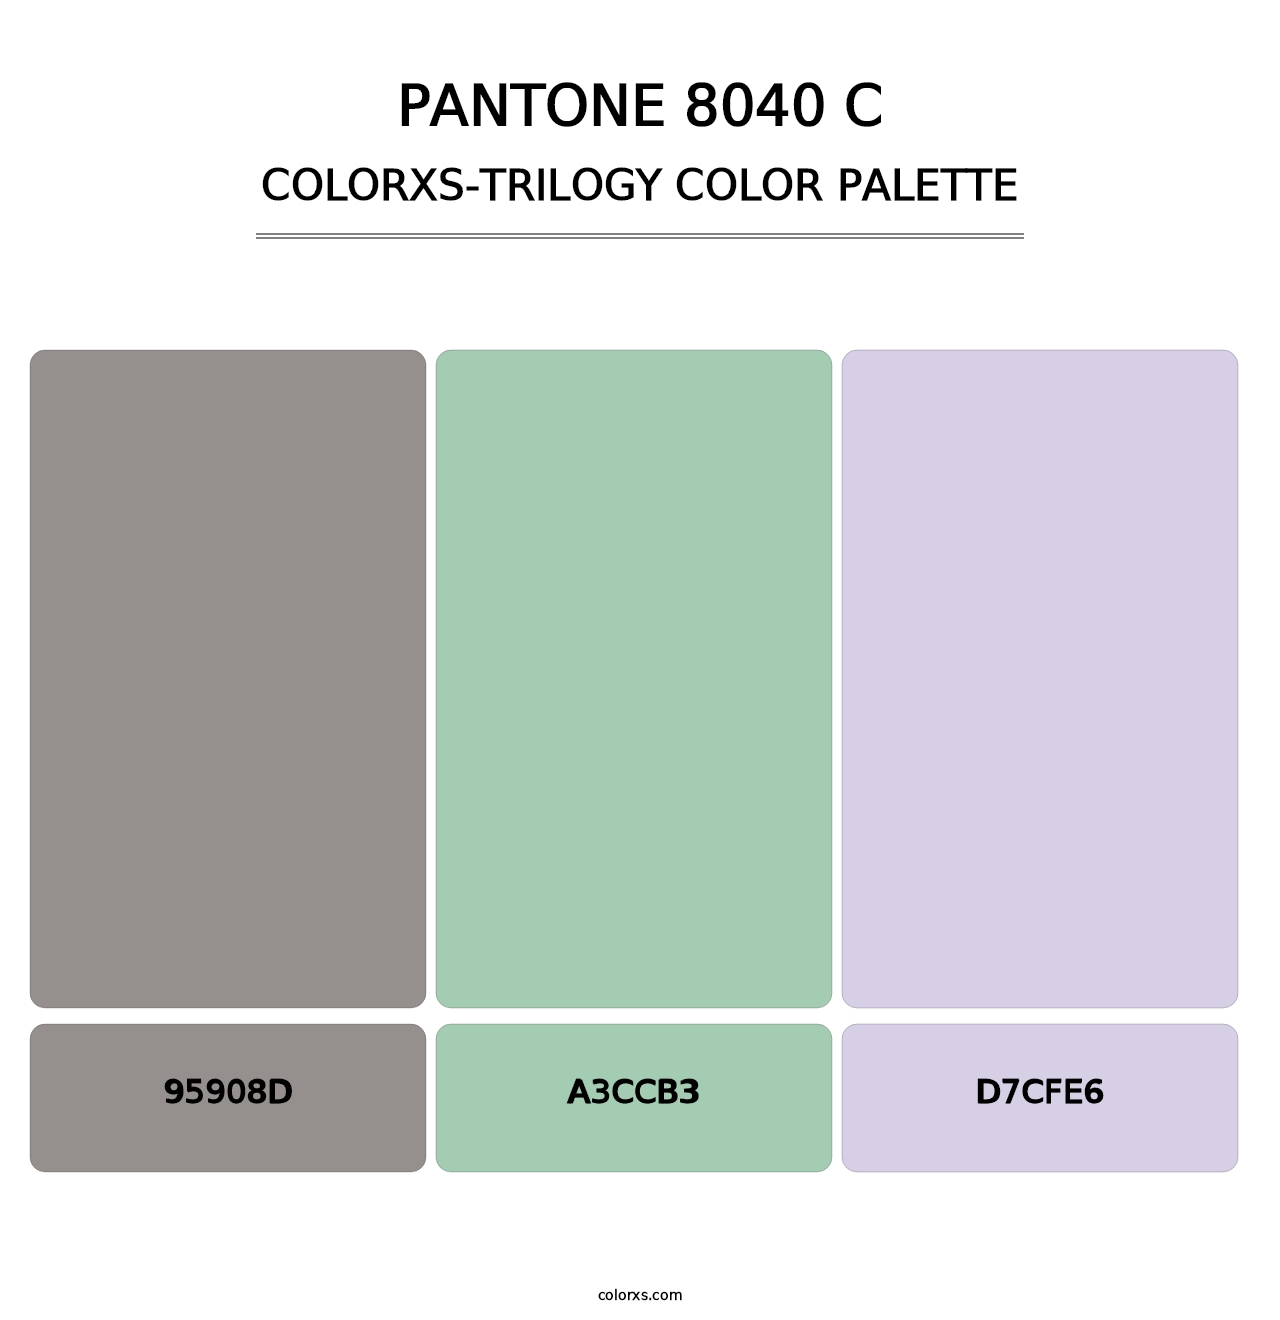 PANTONE 8040 C - Colorxs Trilogy Palette